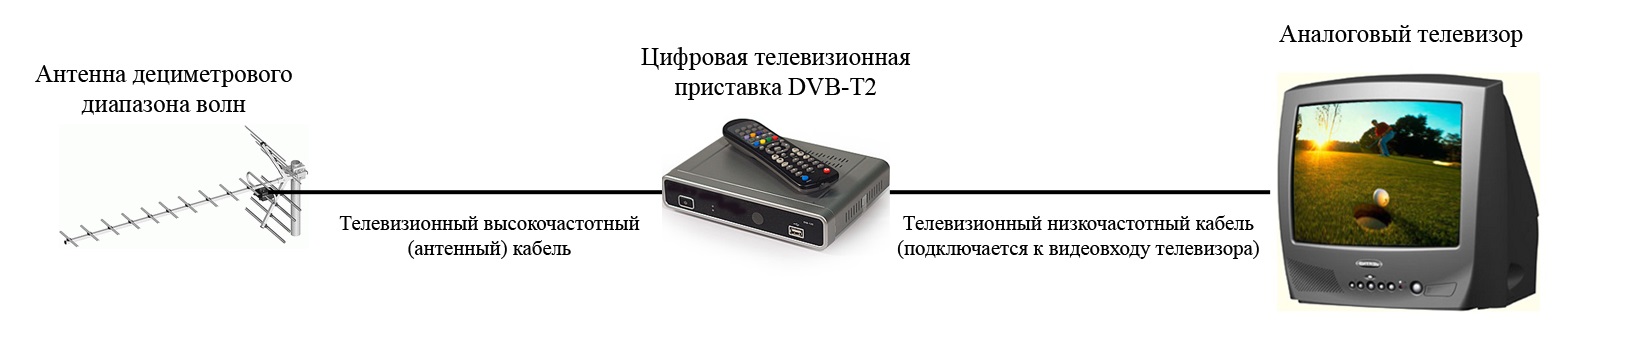 Что такое стандарт dvb-t2 в телевизоре и как работает цифровое тв